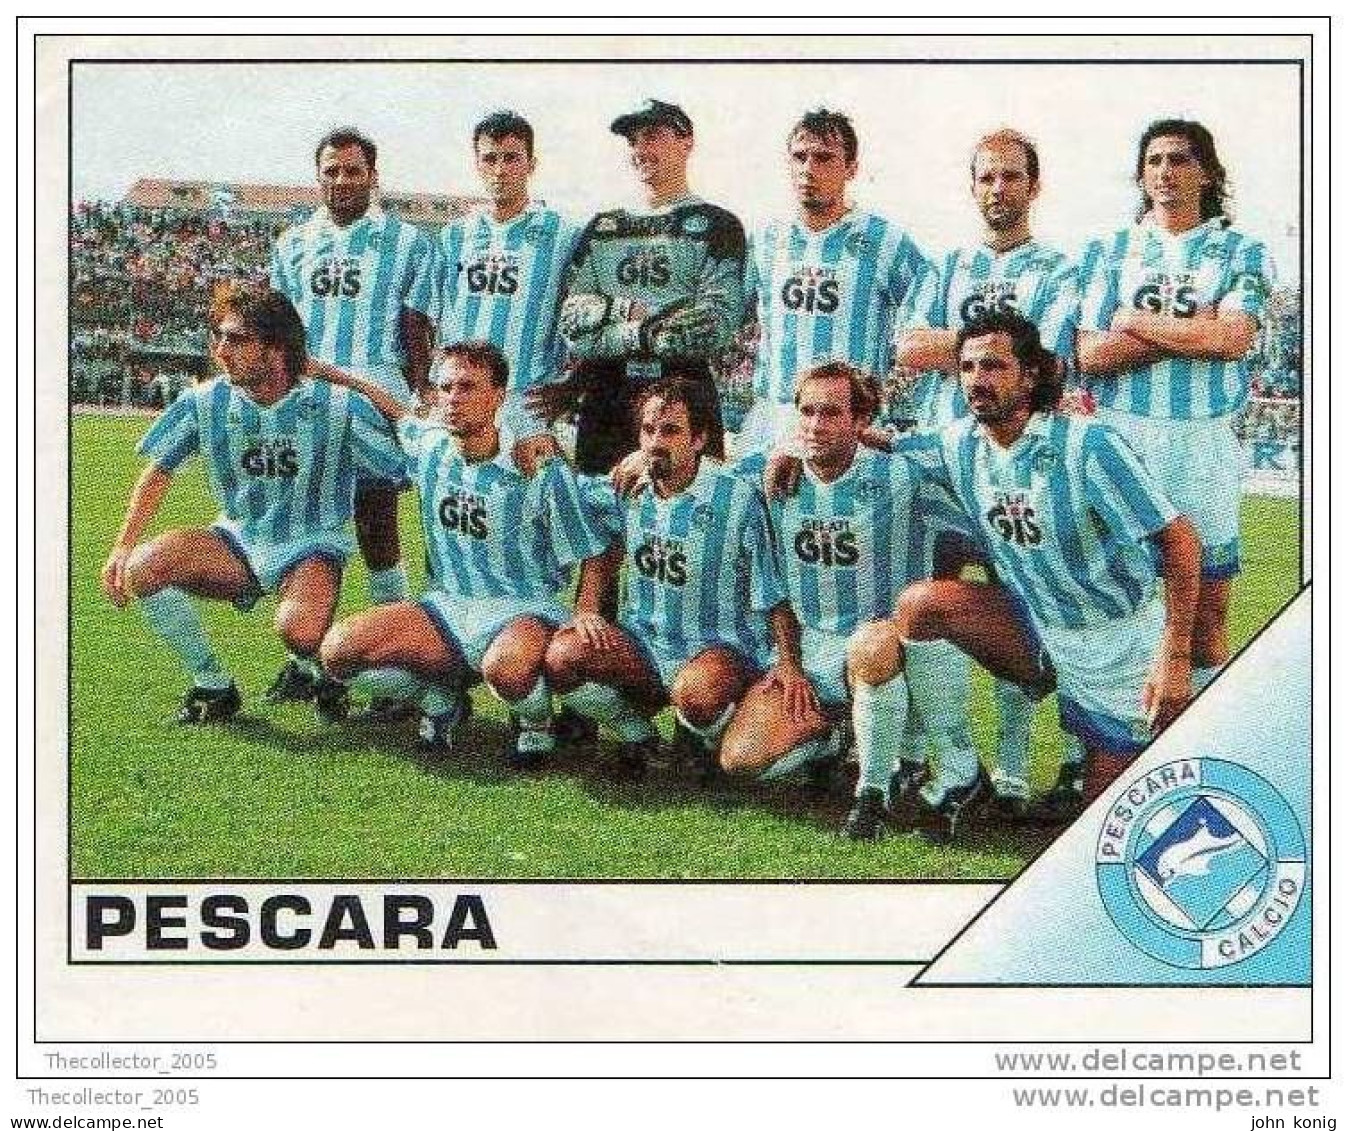 CALCIATORI - CALCIO Figurine Panini-calciatori 1995-96-n.460 (Pescara) - NUOVA-MAI INCOLLATA - Edizione Italiana